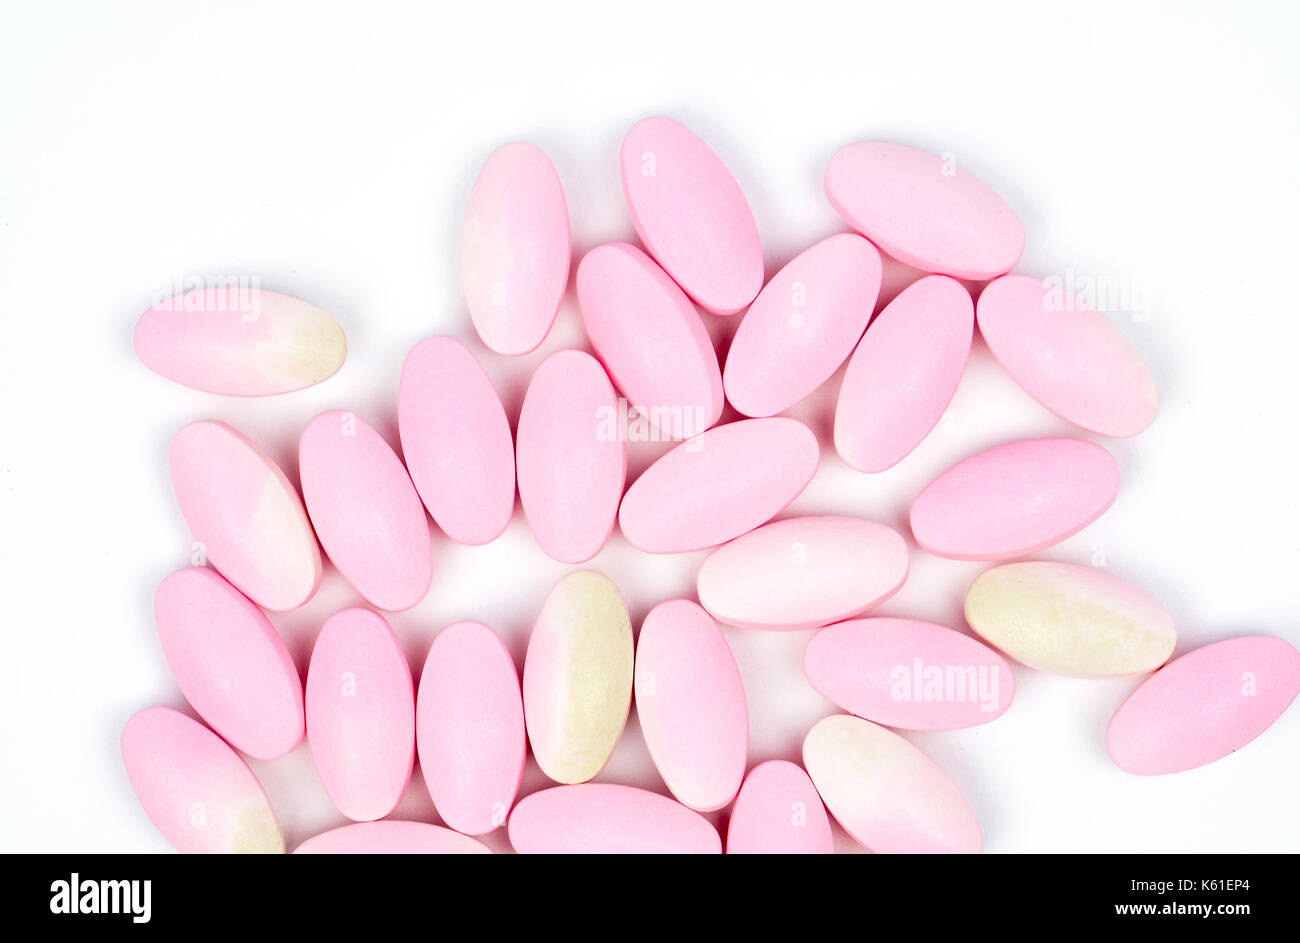 Abgelaufen calcium Tabletten Pillen mit Farbe auf weißem Hintergrund mit Kopie Raum isoliert Stockfoto